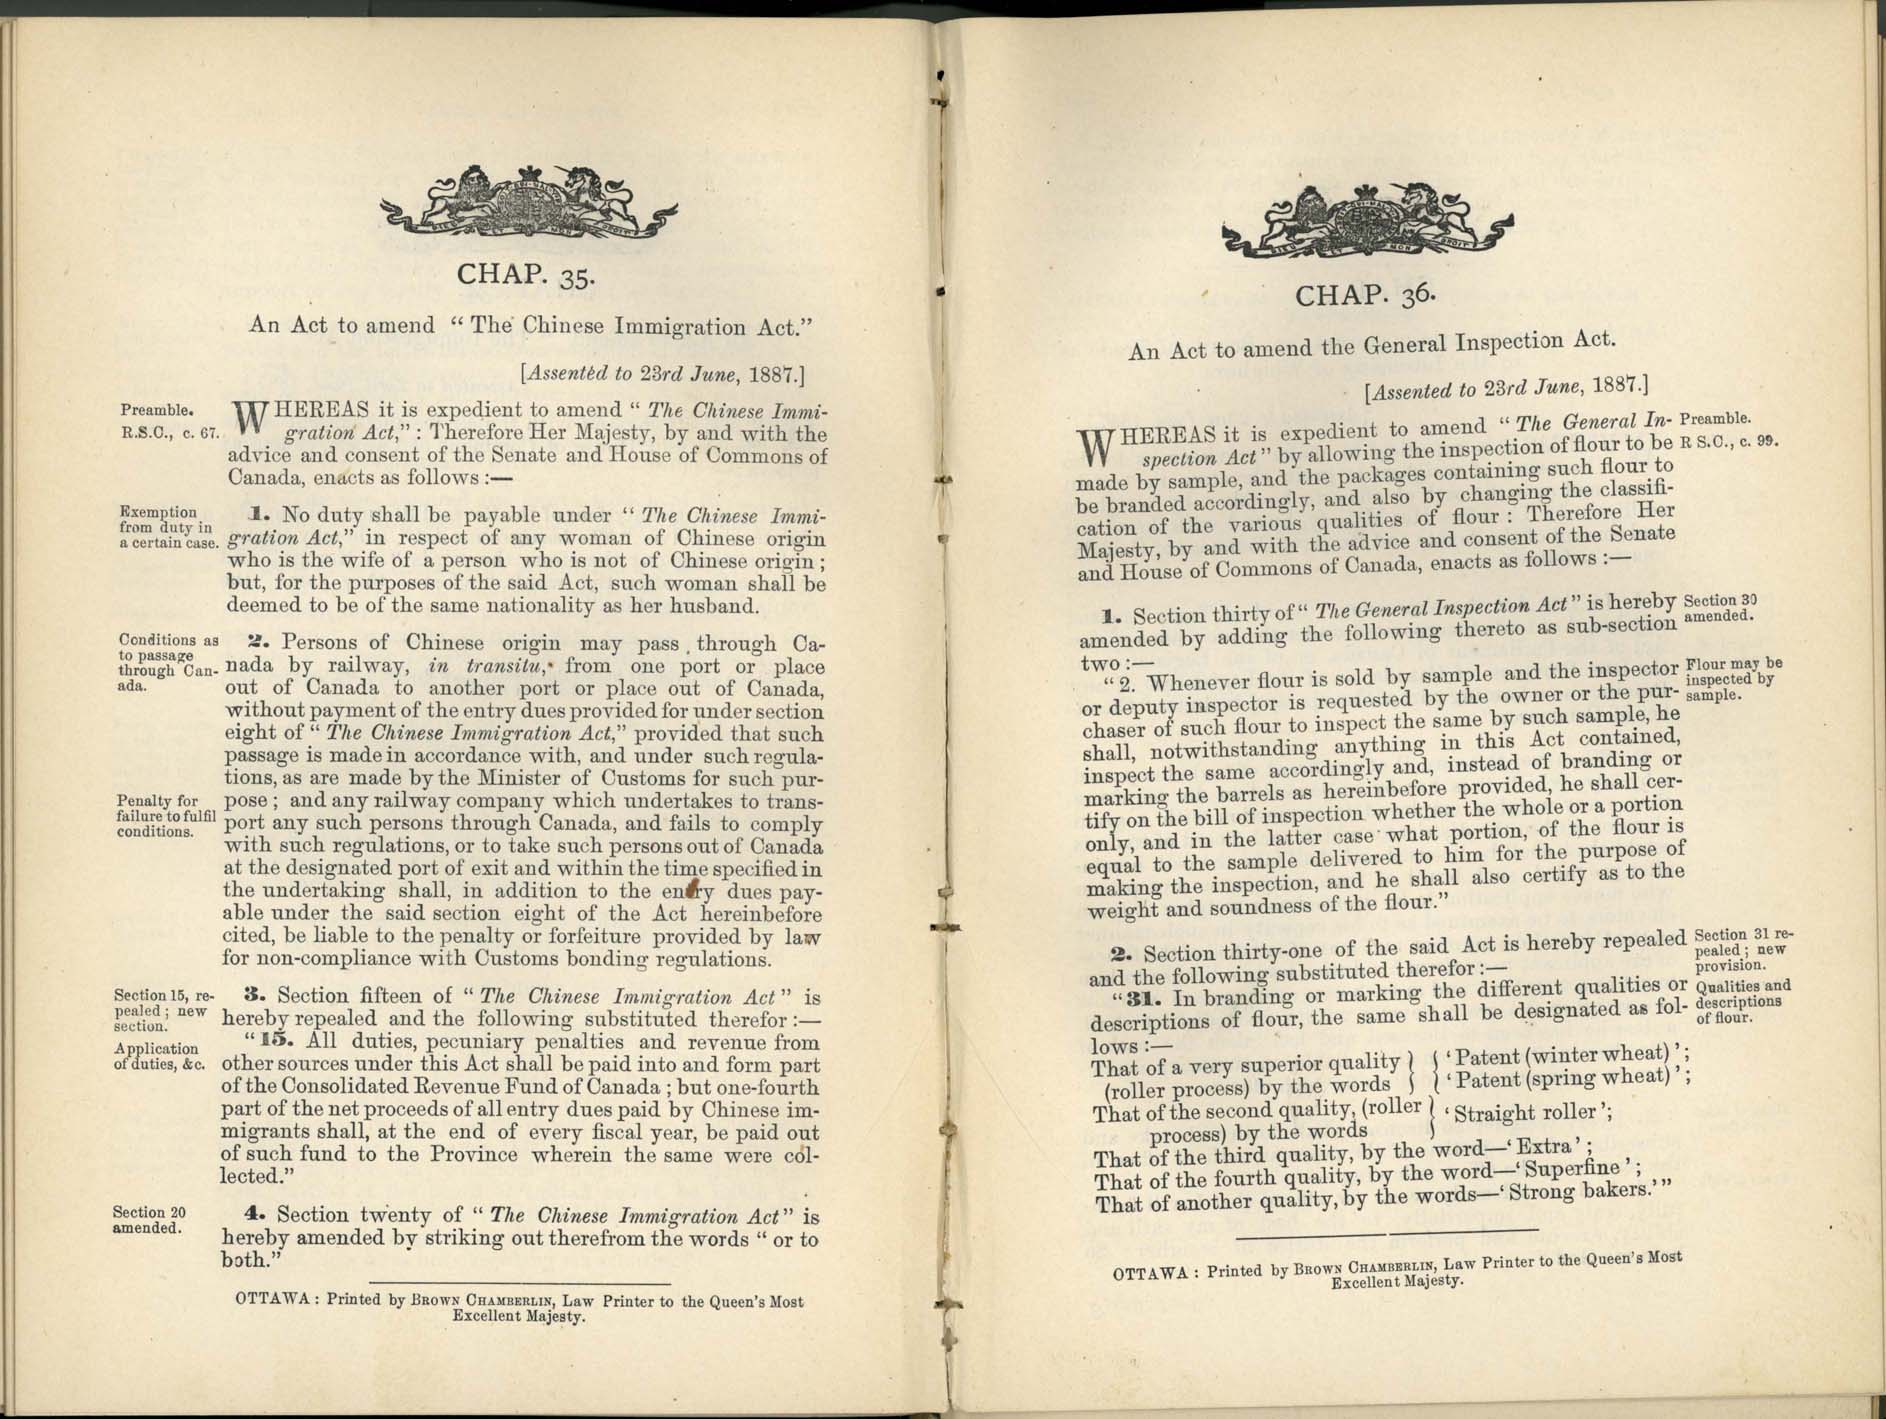 Chap 35 Acte de l’immigration chinoise, 1885 (plus amendements : 1887, 1892, 1900, 1903) Amendment 1887